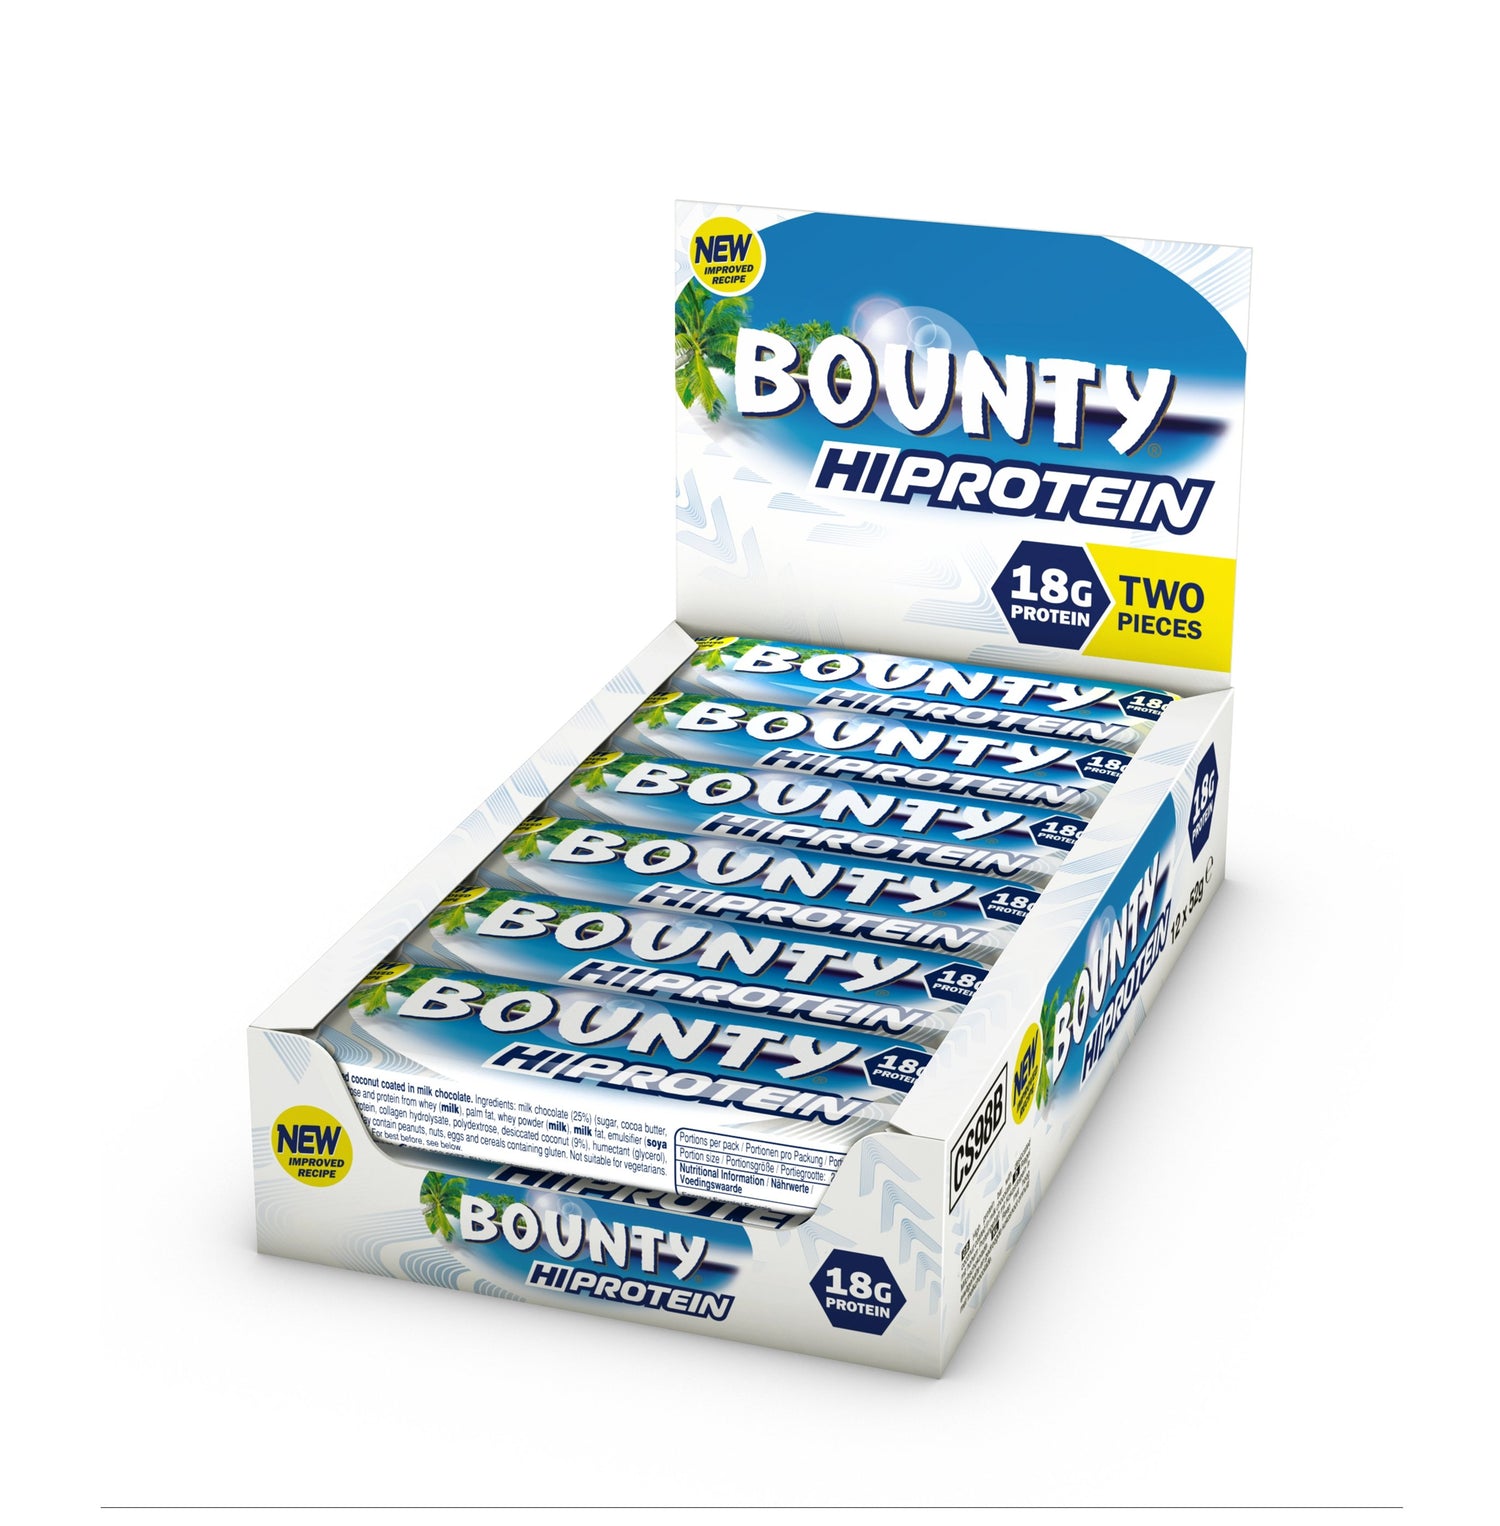 NOVINKA Bounty Hi Protein Bars (12 x 52g) - theskinnyfoodco